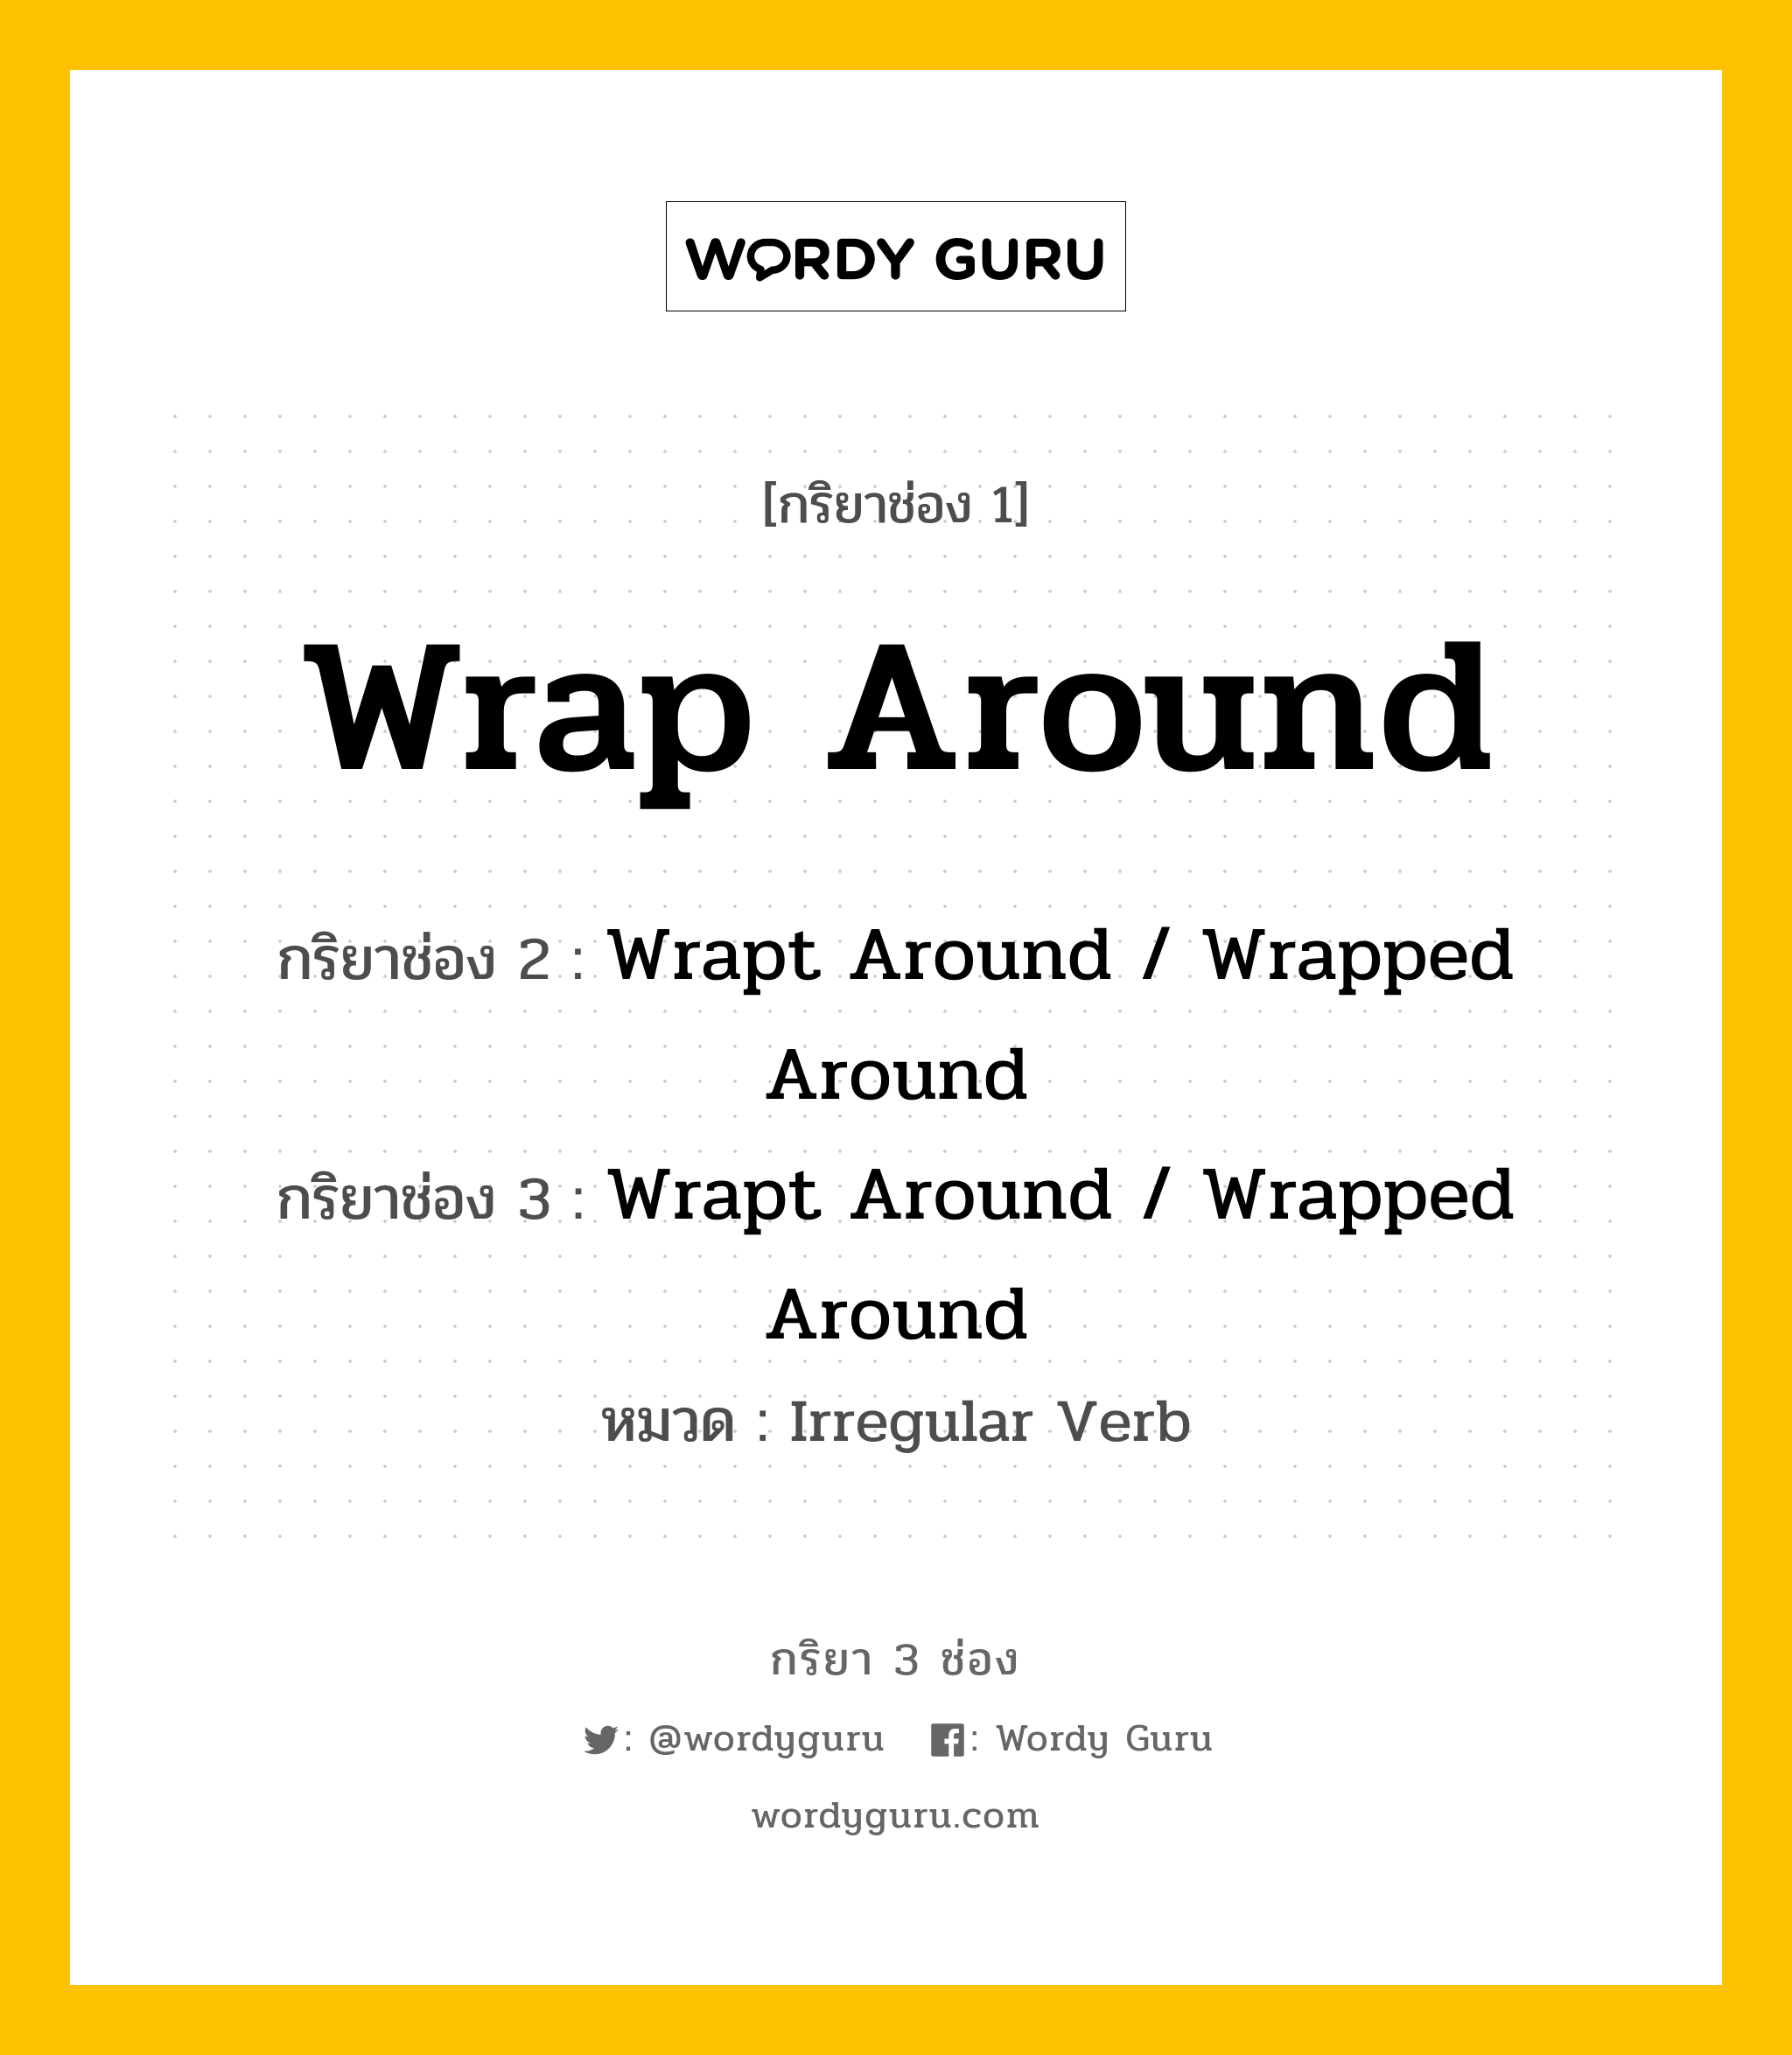 กริยา 3 ช่อง: Wrap Around ช่อง 2 Wrap Around ช่อง 3 คืออะไร, กริยาช่อง 1 Wrap Around กริยาช่อง 2 Wrapt Around / Wrapped Around กริยาช่อง 3 Wrapt Around / Wrapped Around หมวด Irregular Verb หมวด Irregular Verb